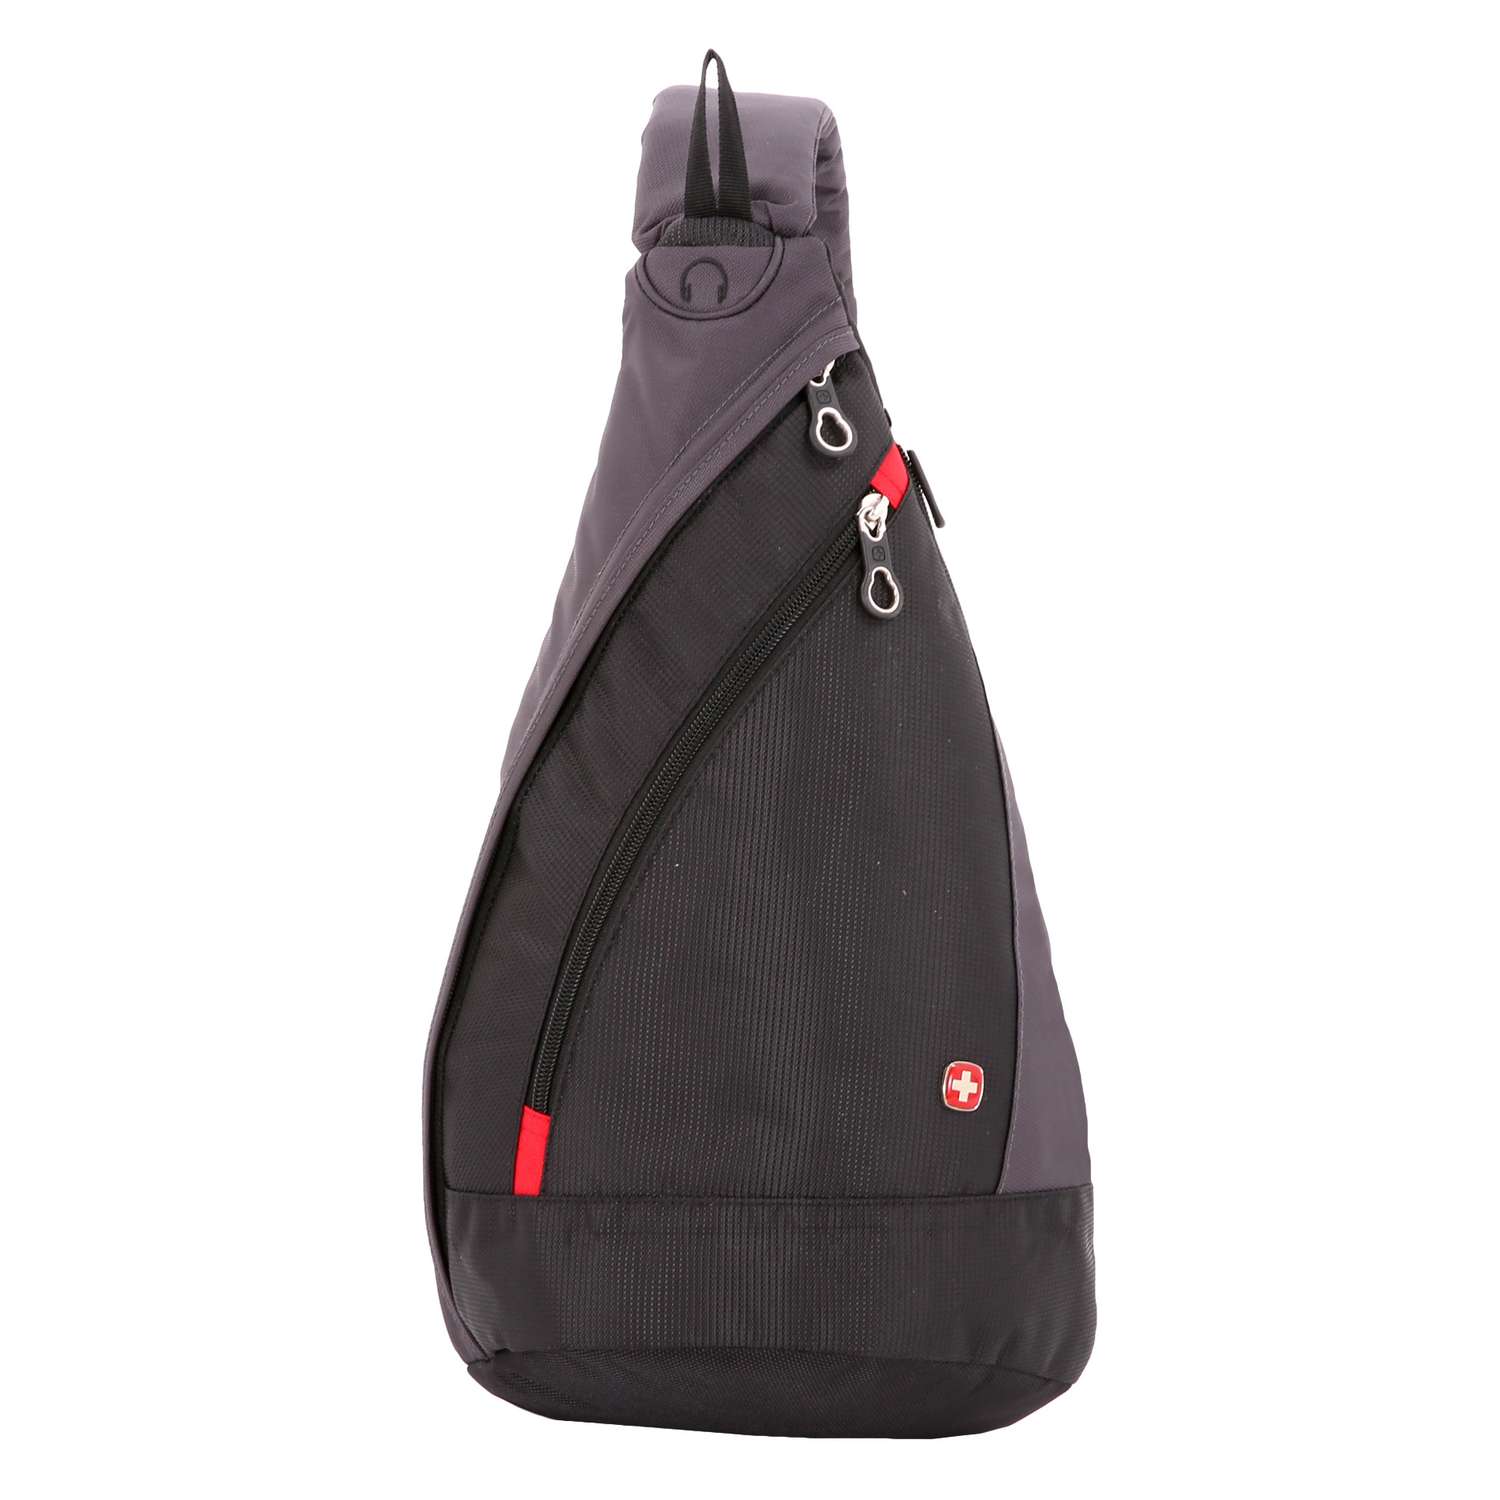 Рюкзак Swissgear с одним плечевым ремнем черный серый - фото 1